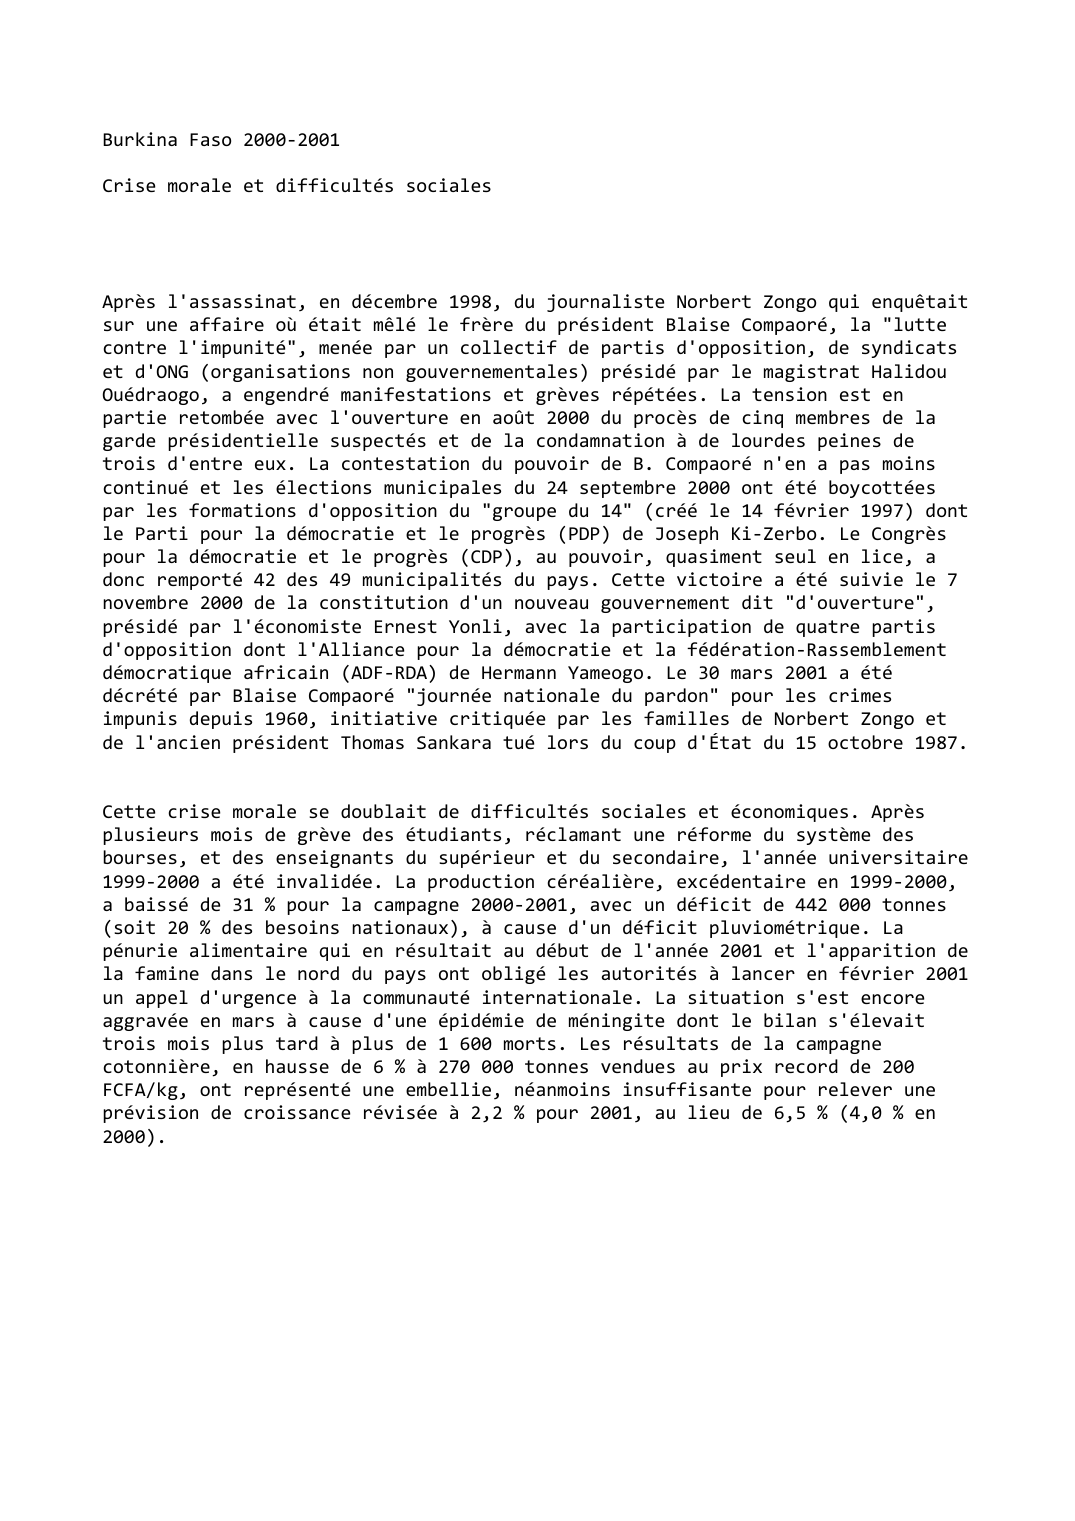 Prévisualisation du document Burkina Faso (2000-2001): Crise morale et difficultés sociales